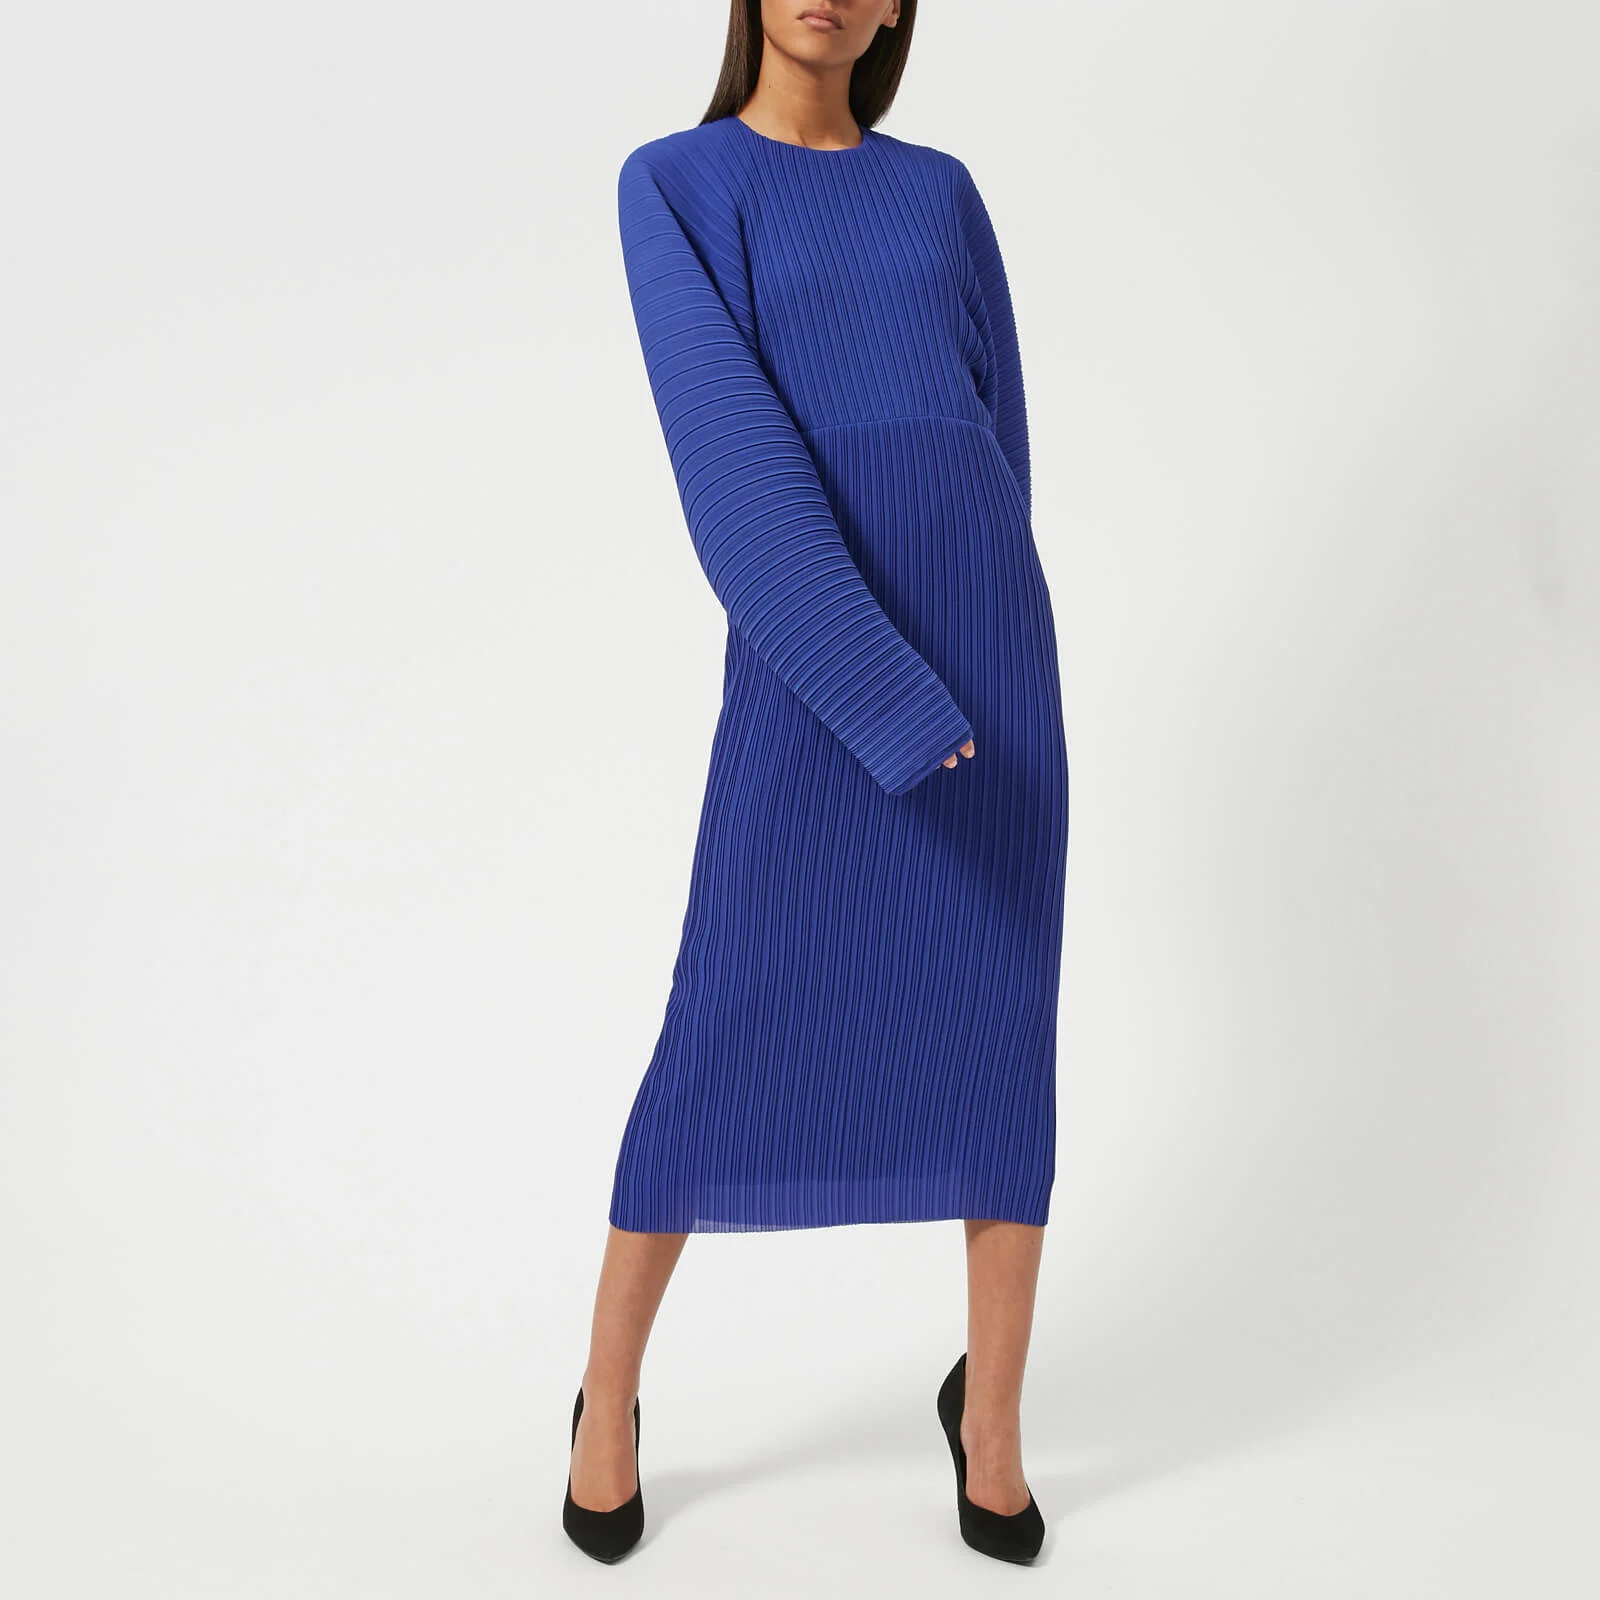 Solace London Women's Singer Dress - Blue Image 1